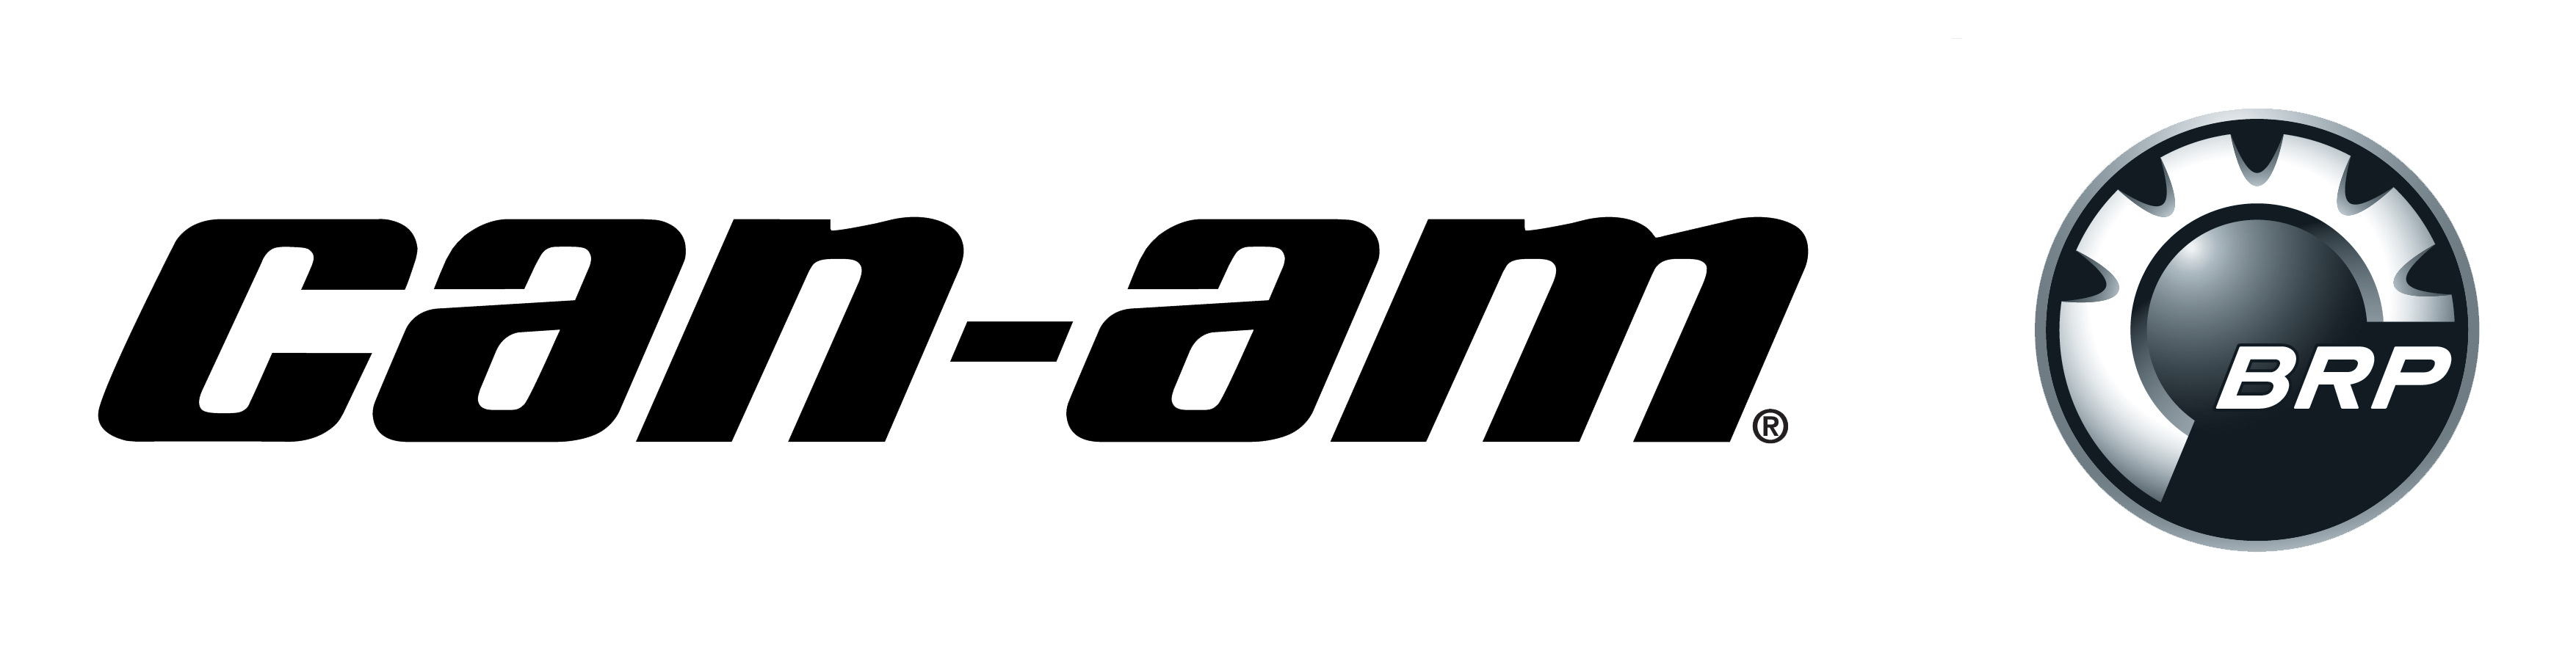 BRP Logo - Canam Logo New